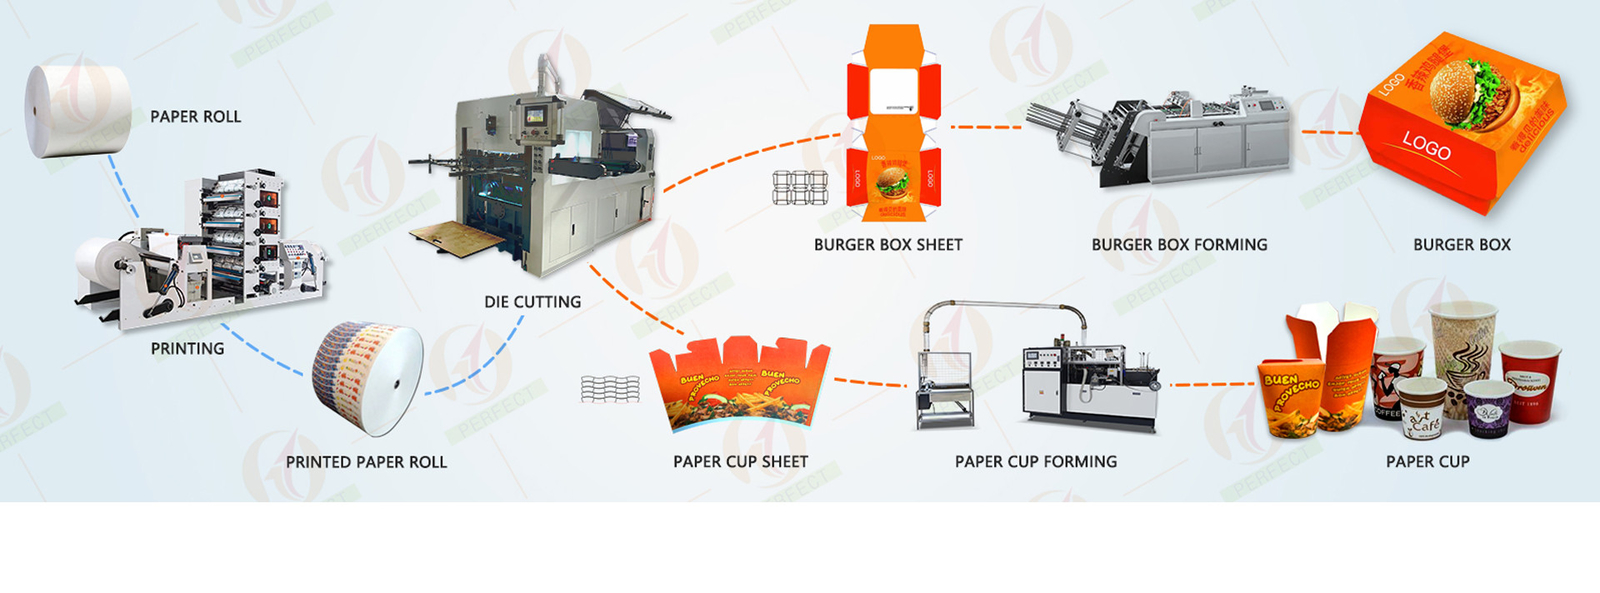 गुणवत्ता पेपर कप बनाने की मशीनें कारखाना